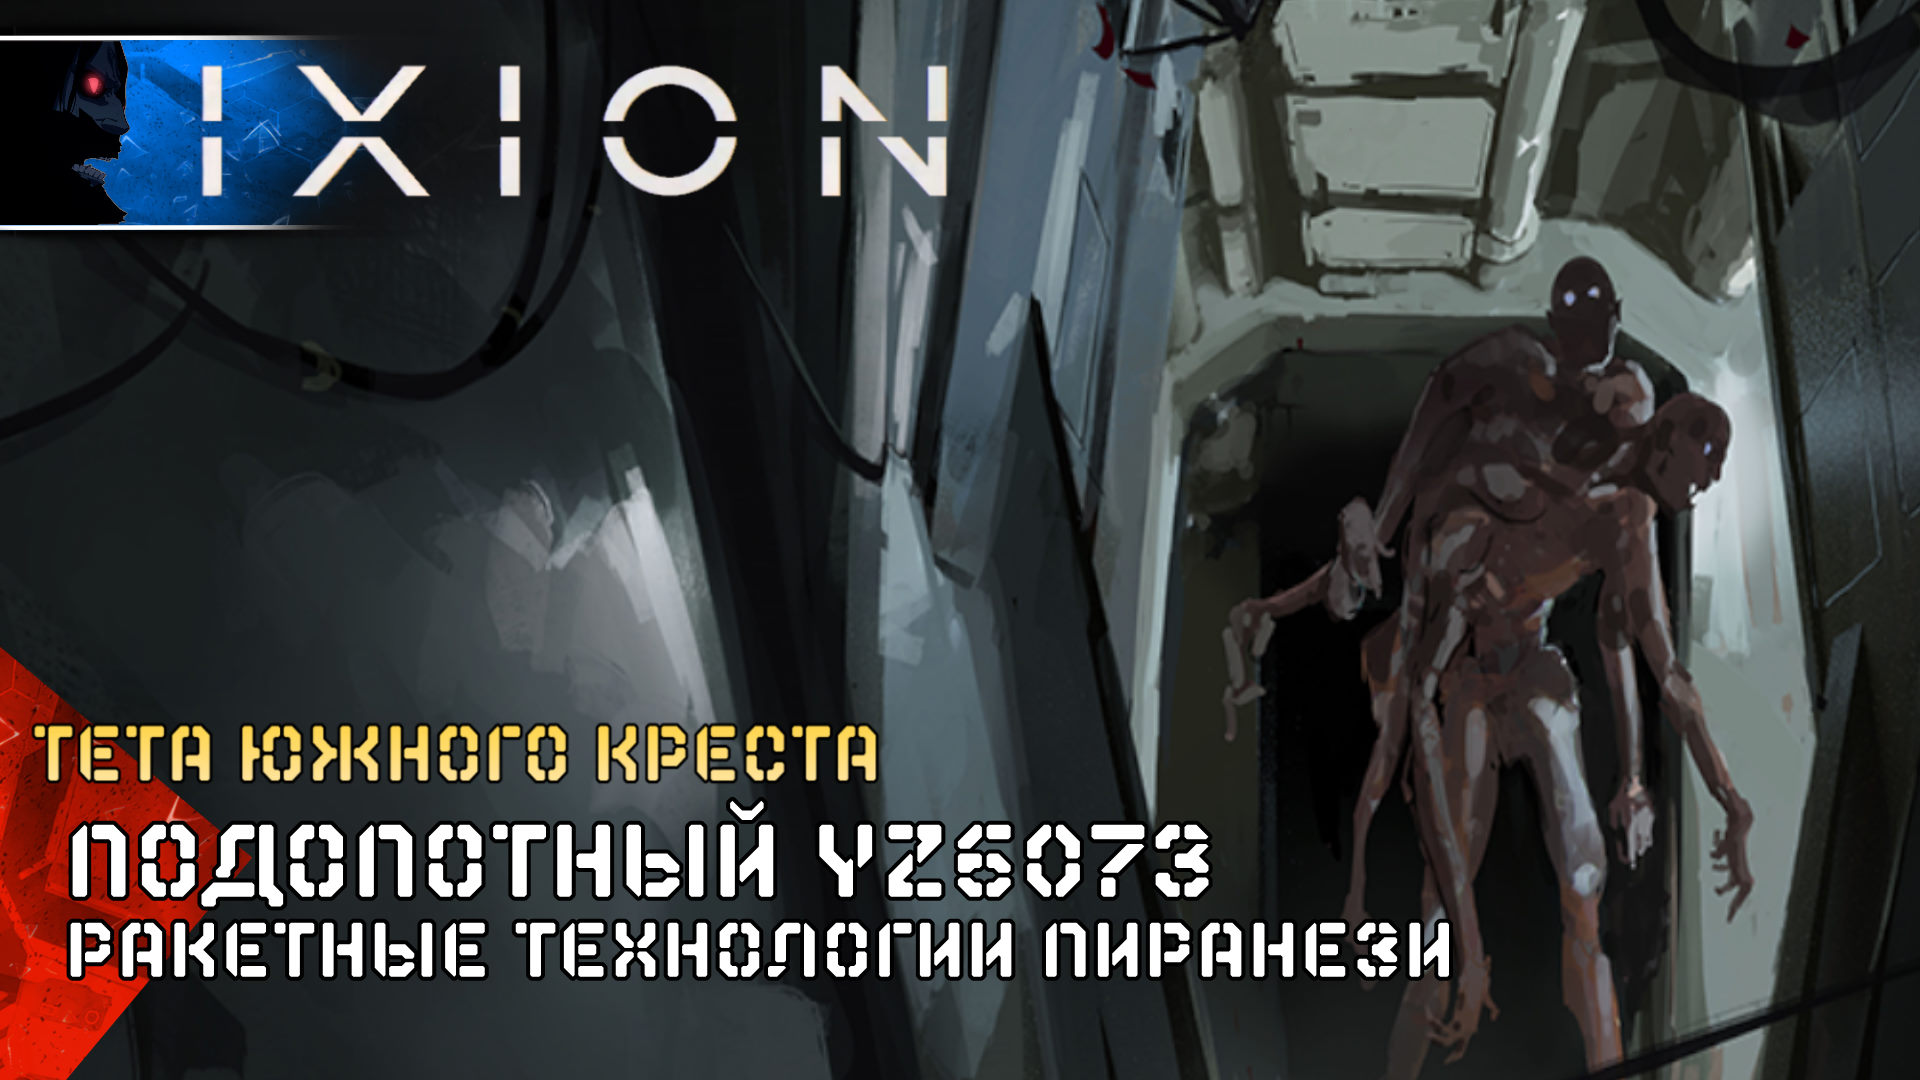 IXION Подопотный ZY6073 (14) Полное Прохождение игры ИКСИОН на Русском Геймплей Стратегия